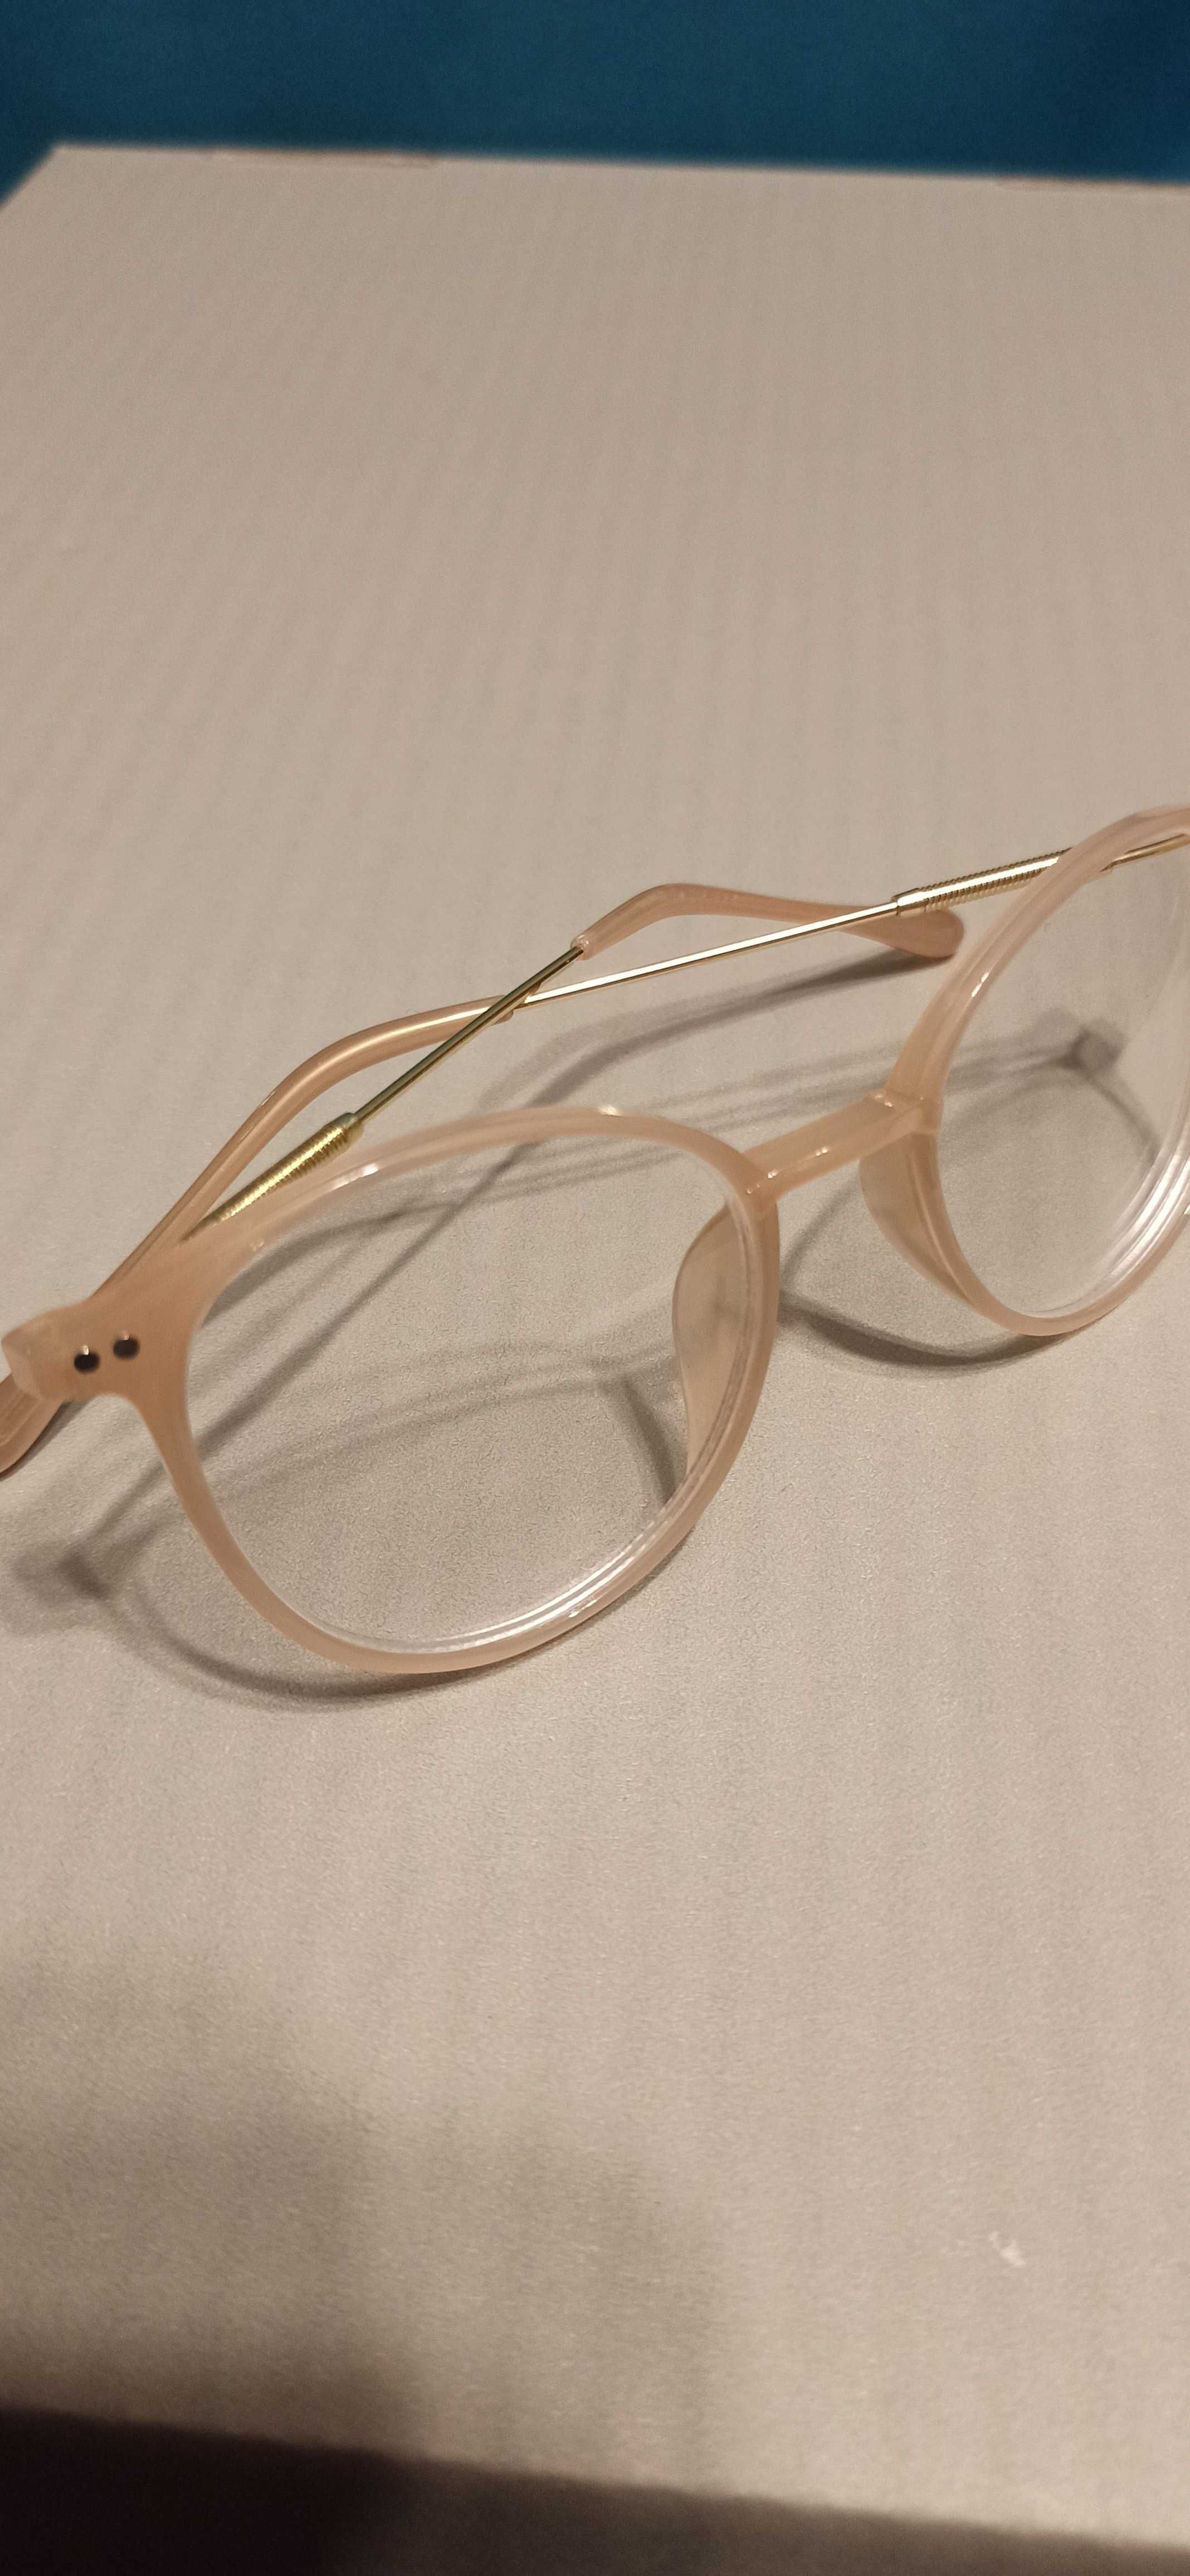 Nowe okulary minus 2 klasyczne okrągłe